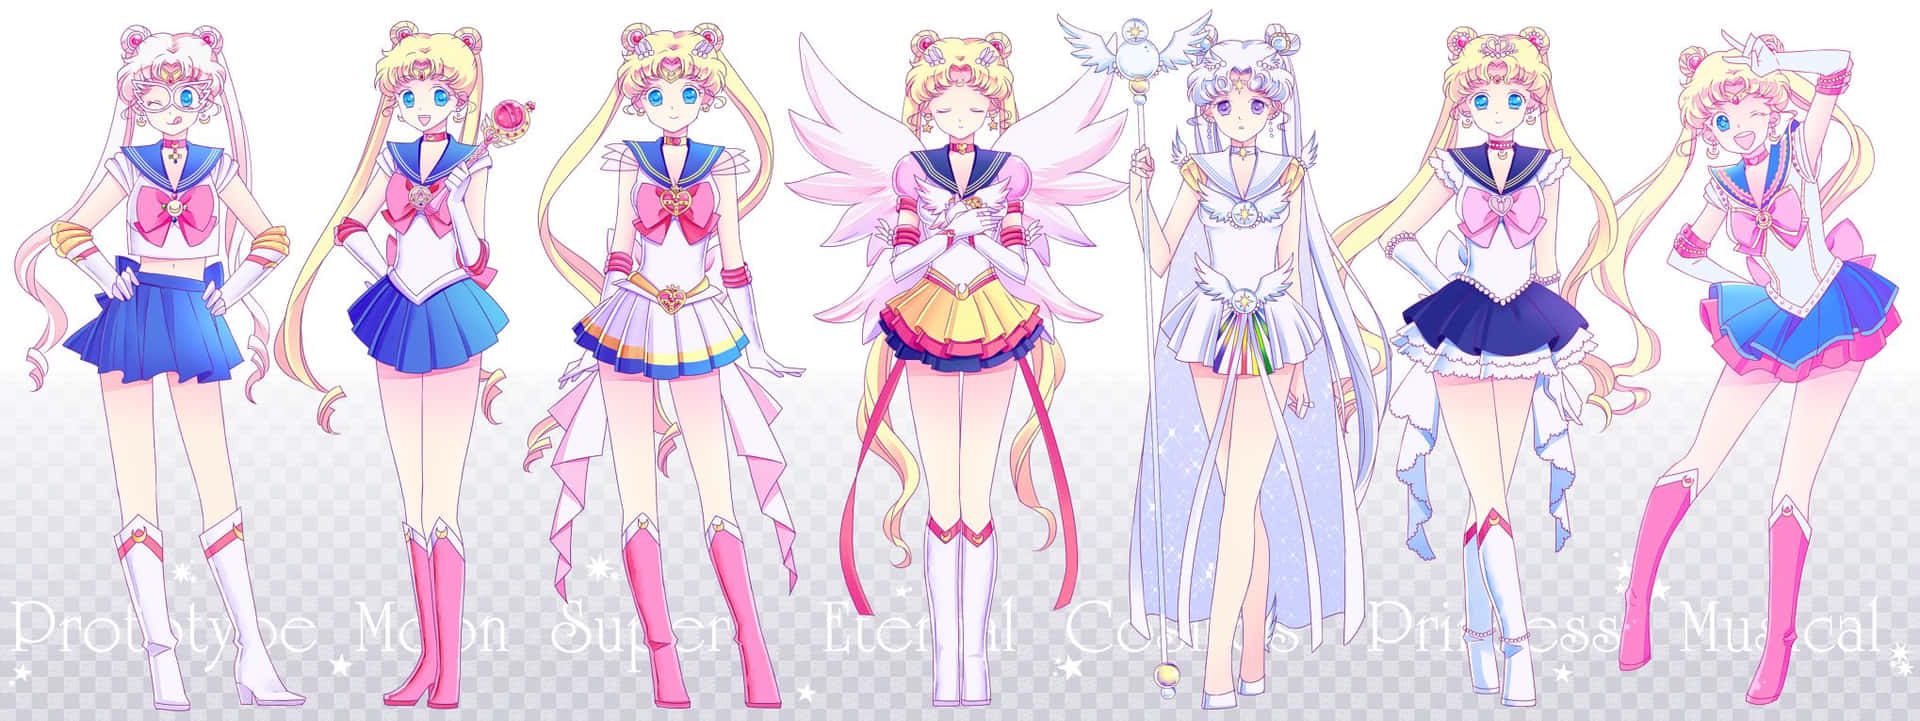 Pastelfarbenesailor Moon Kostüme Anime Mädchen Wallpaper